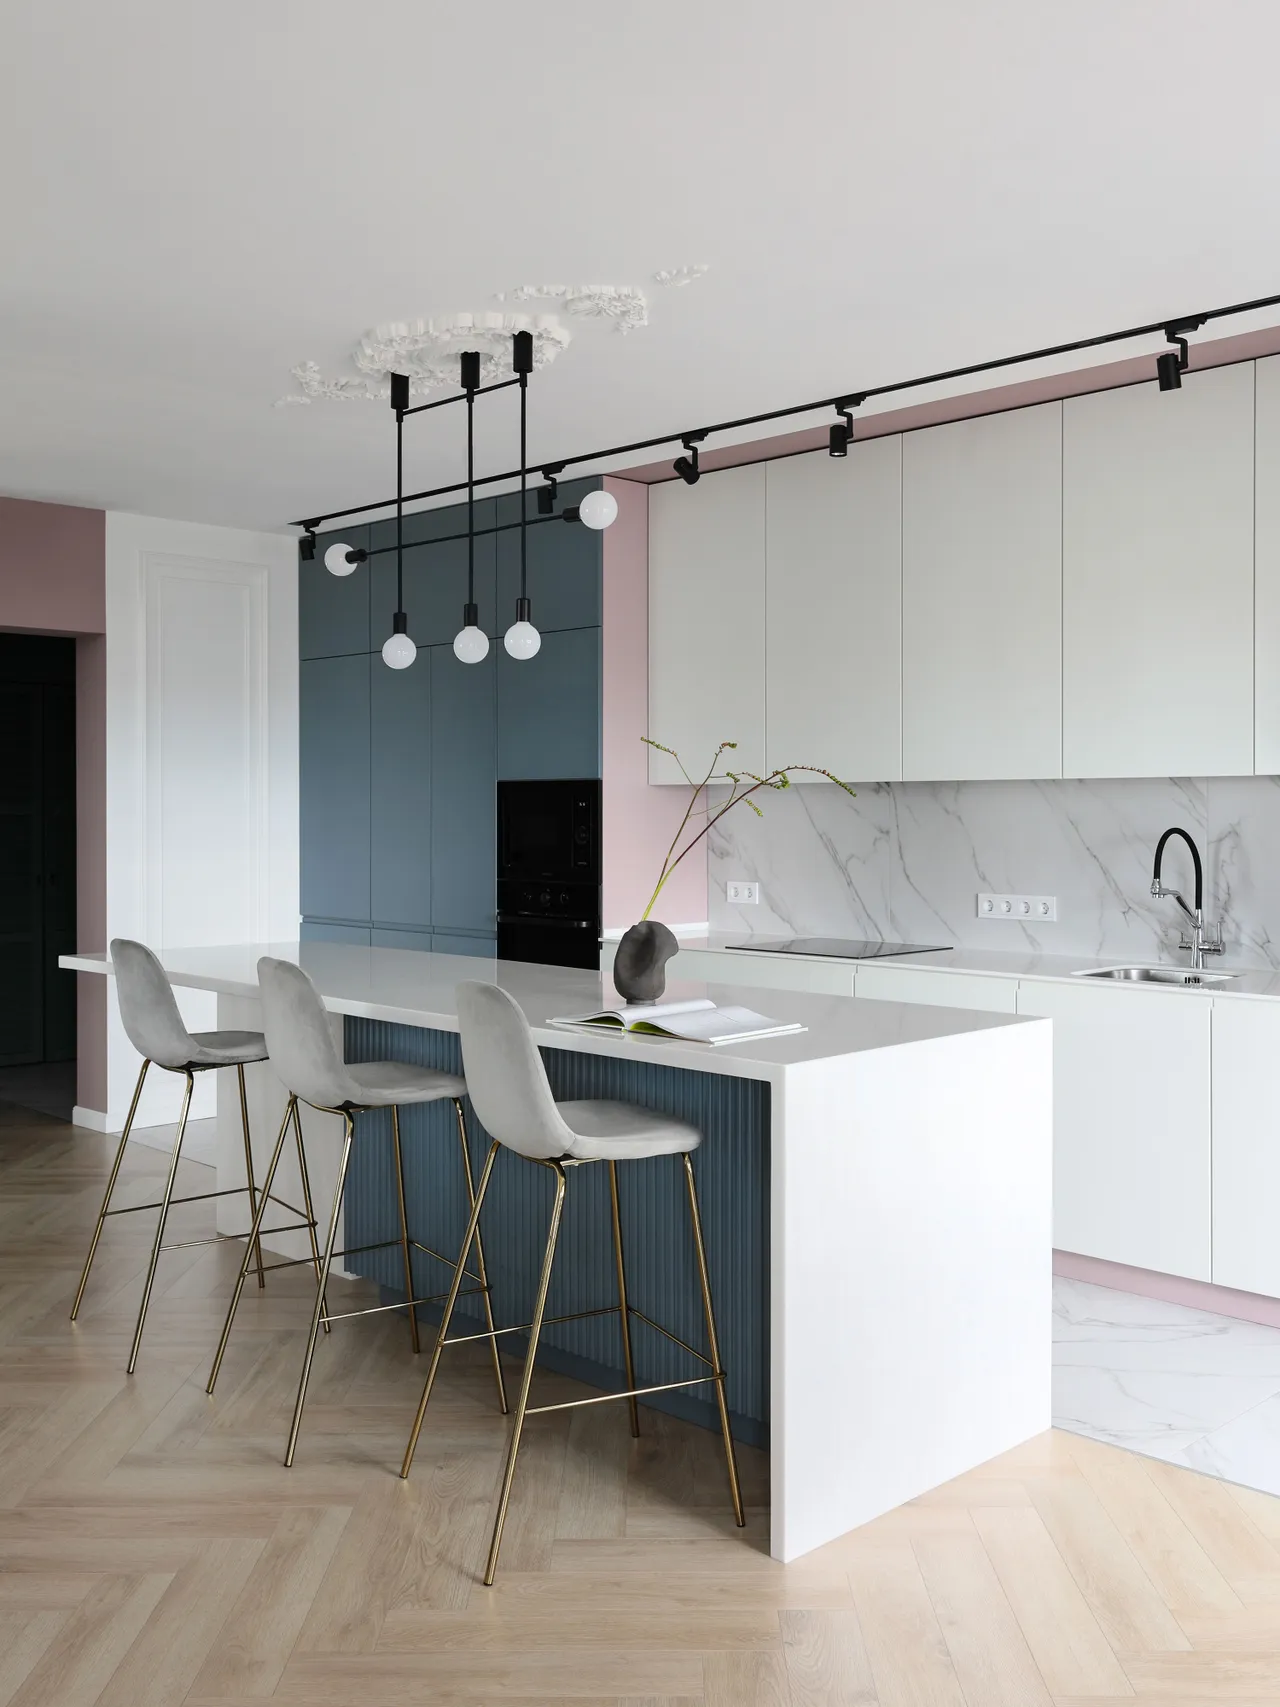 Thông thường để tiết kiệm diện tích mà vừa đảm bảo tiện nghi, phòng bếp trong các căn hộ chung cư thường được thiết kế mở nối liền với phòng khách.